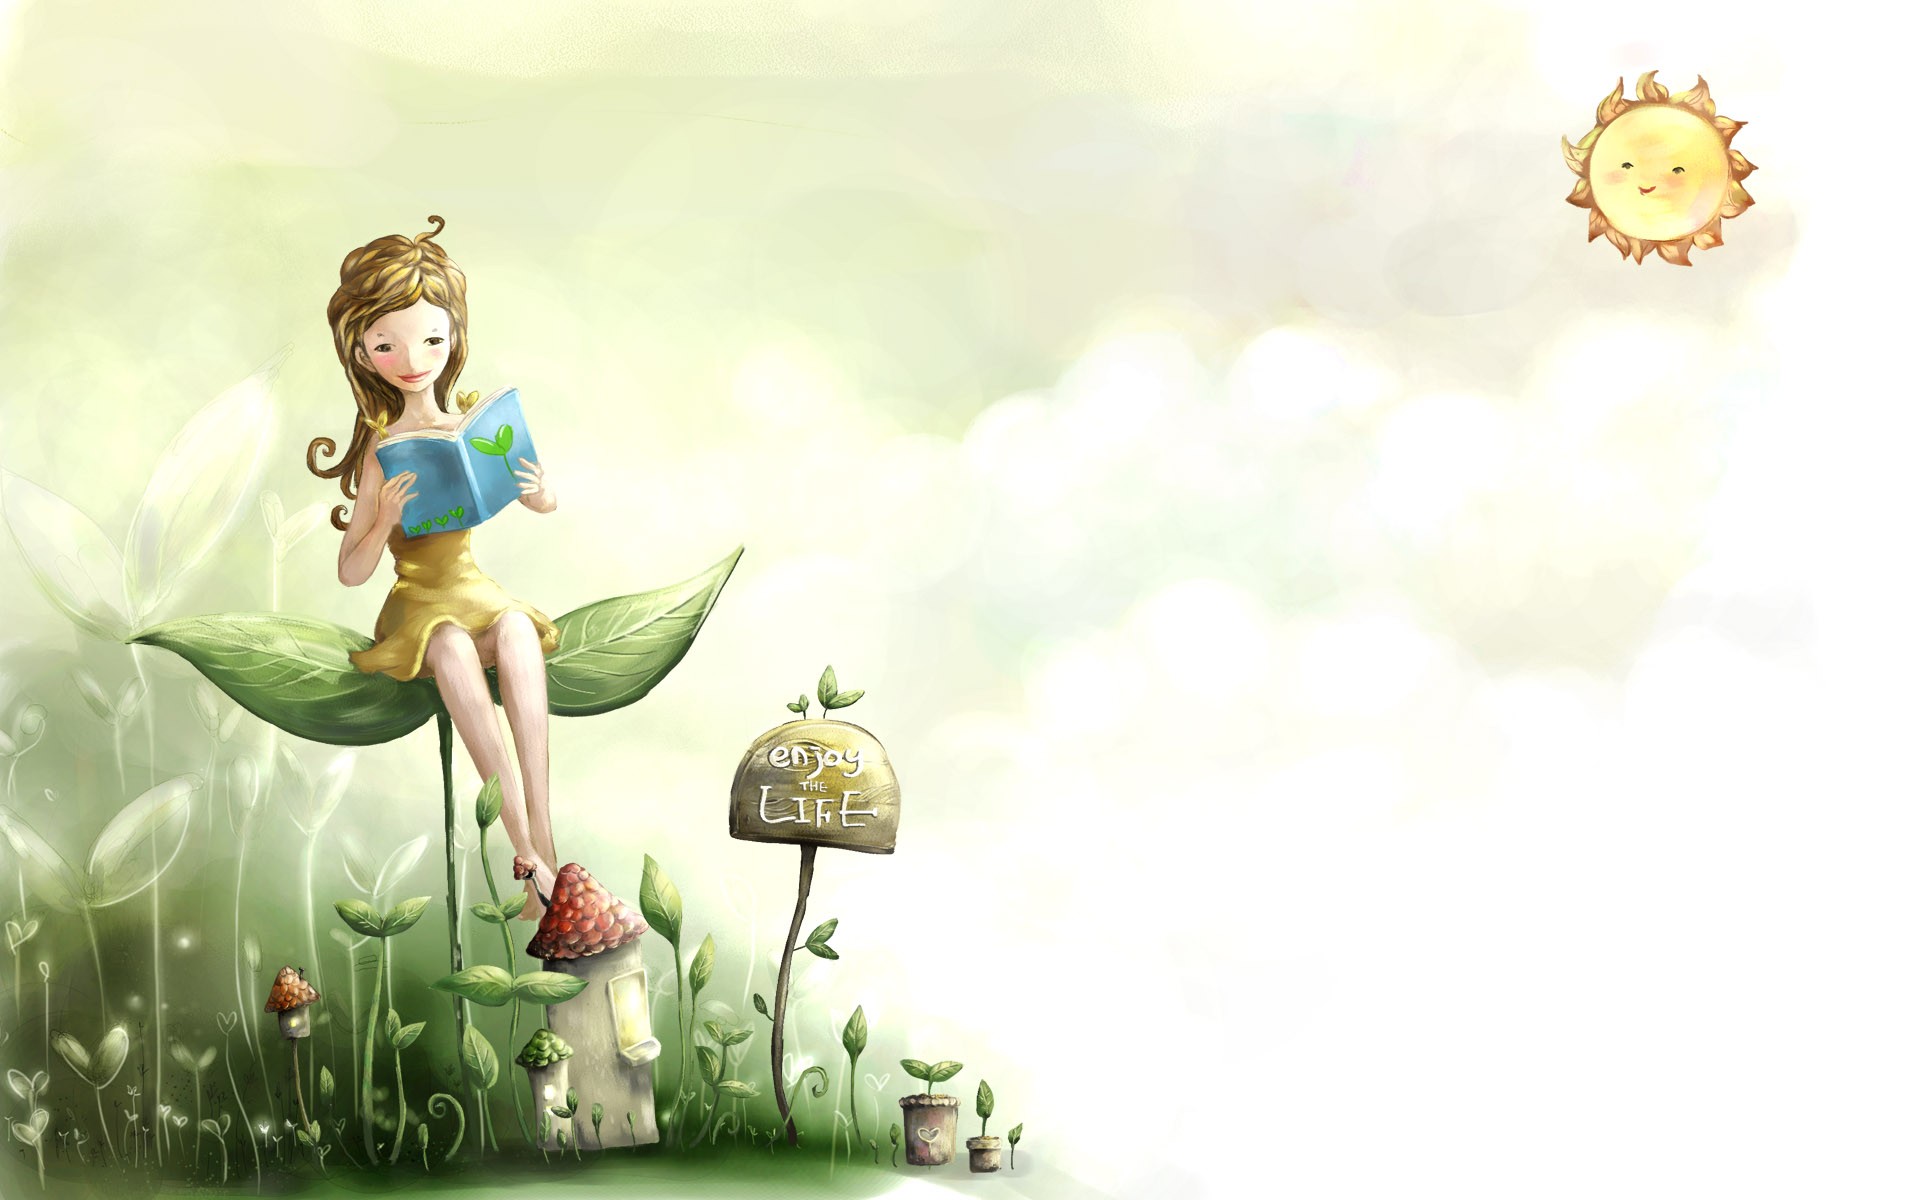 소녀 독서 책 배경 화면,삽화,만화,소설 속의 인물,식물,행복